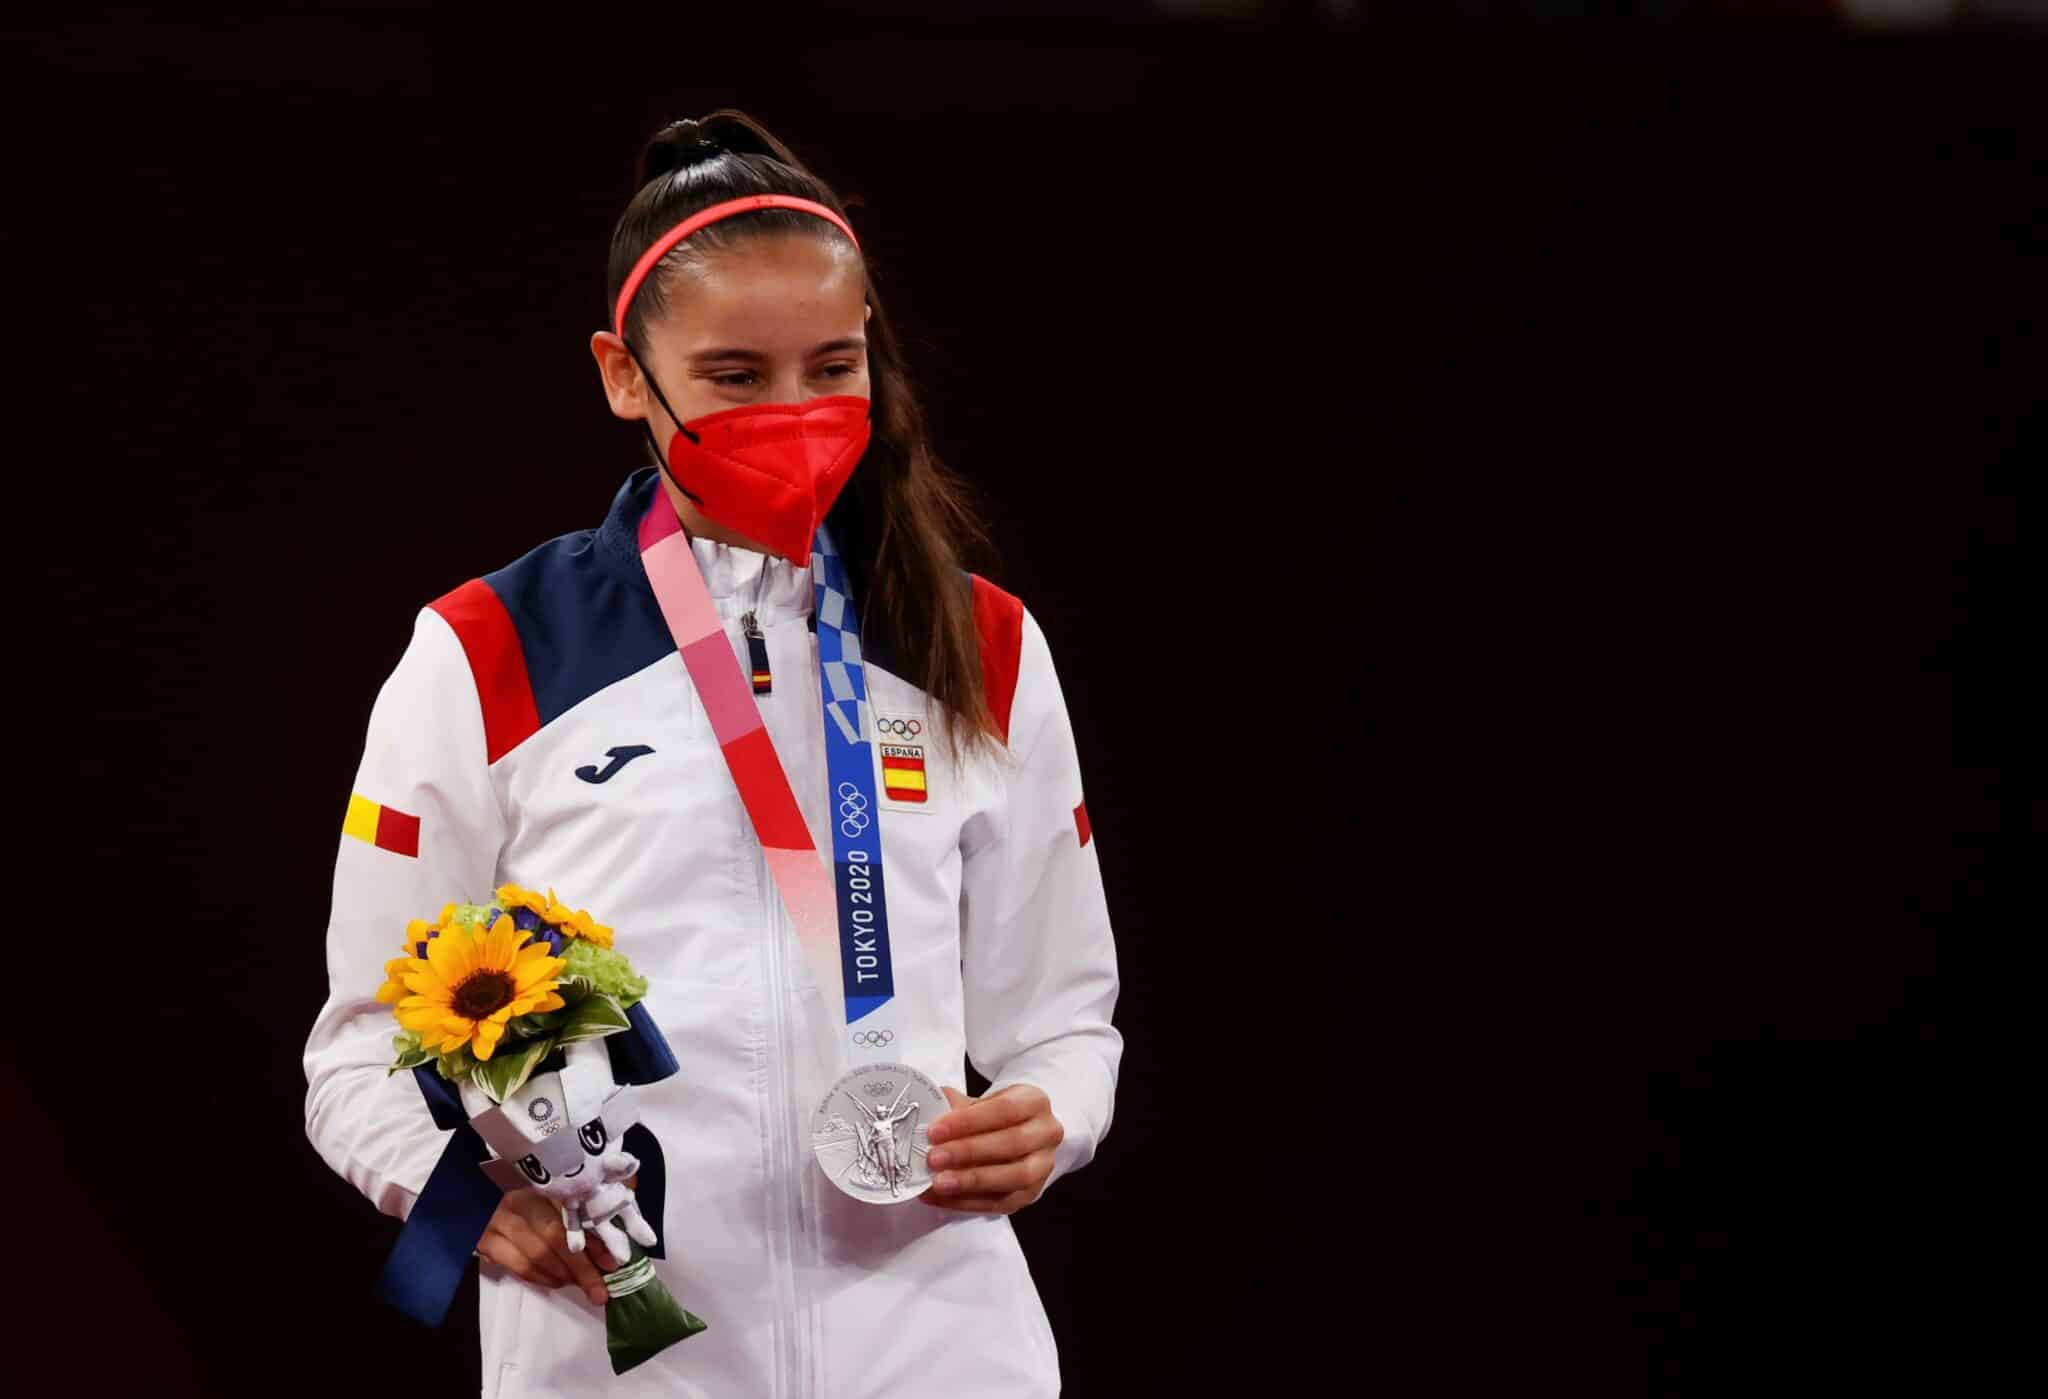 La española Adriana Cerezo recibe la medalla de plata en la categoría de -49kg femenina de Taekwondo durante los Juegos Olímpicos 2020, este sábado en el recinto de Makuhari Messe en Tokio (Japón).